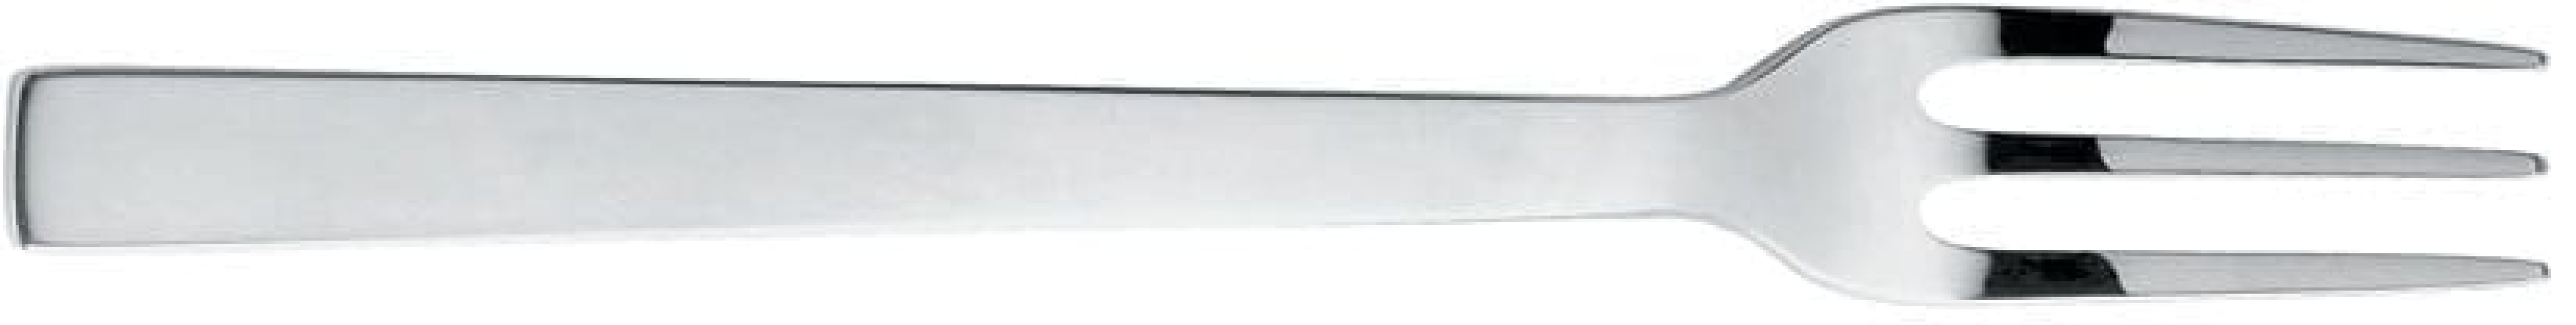 Tafelvork, 19 cm, Santiago - Alessi